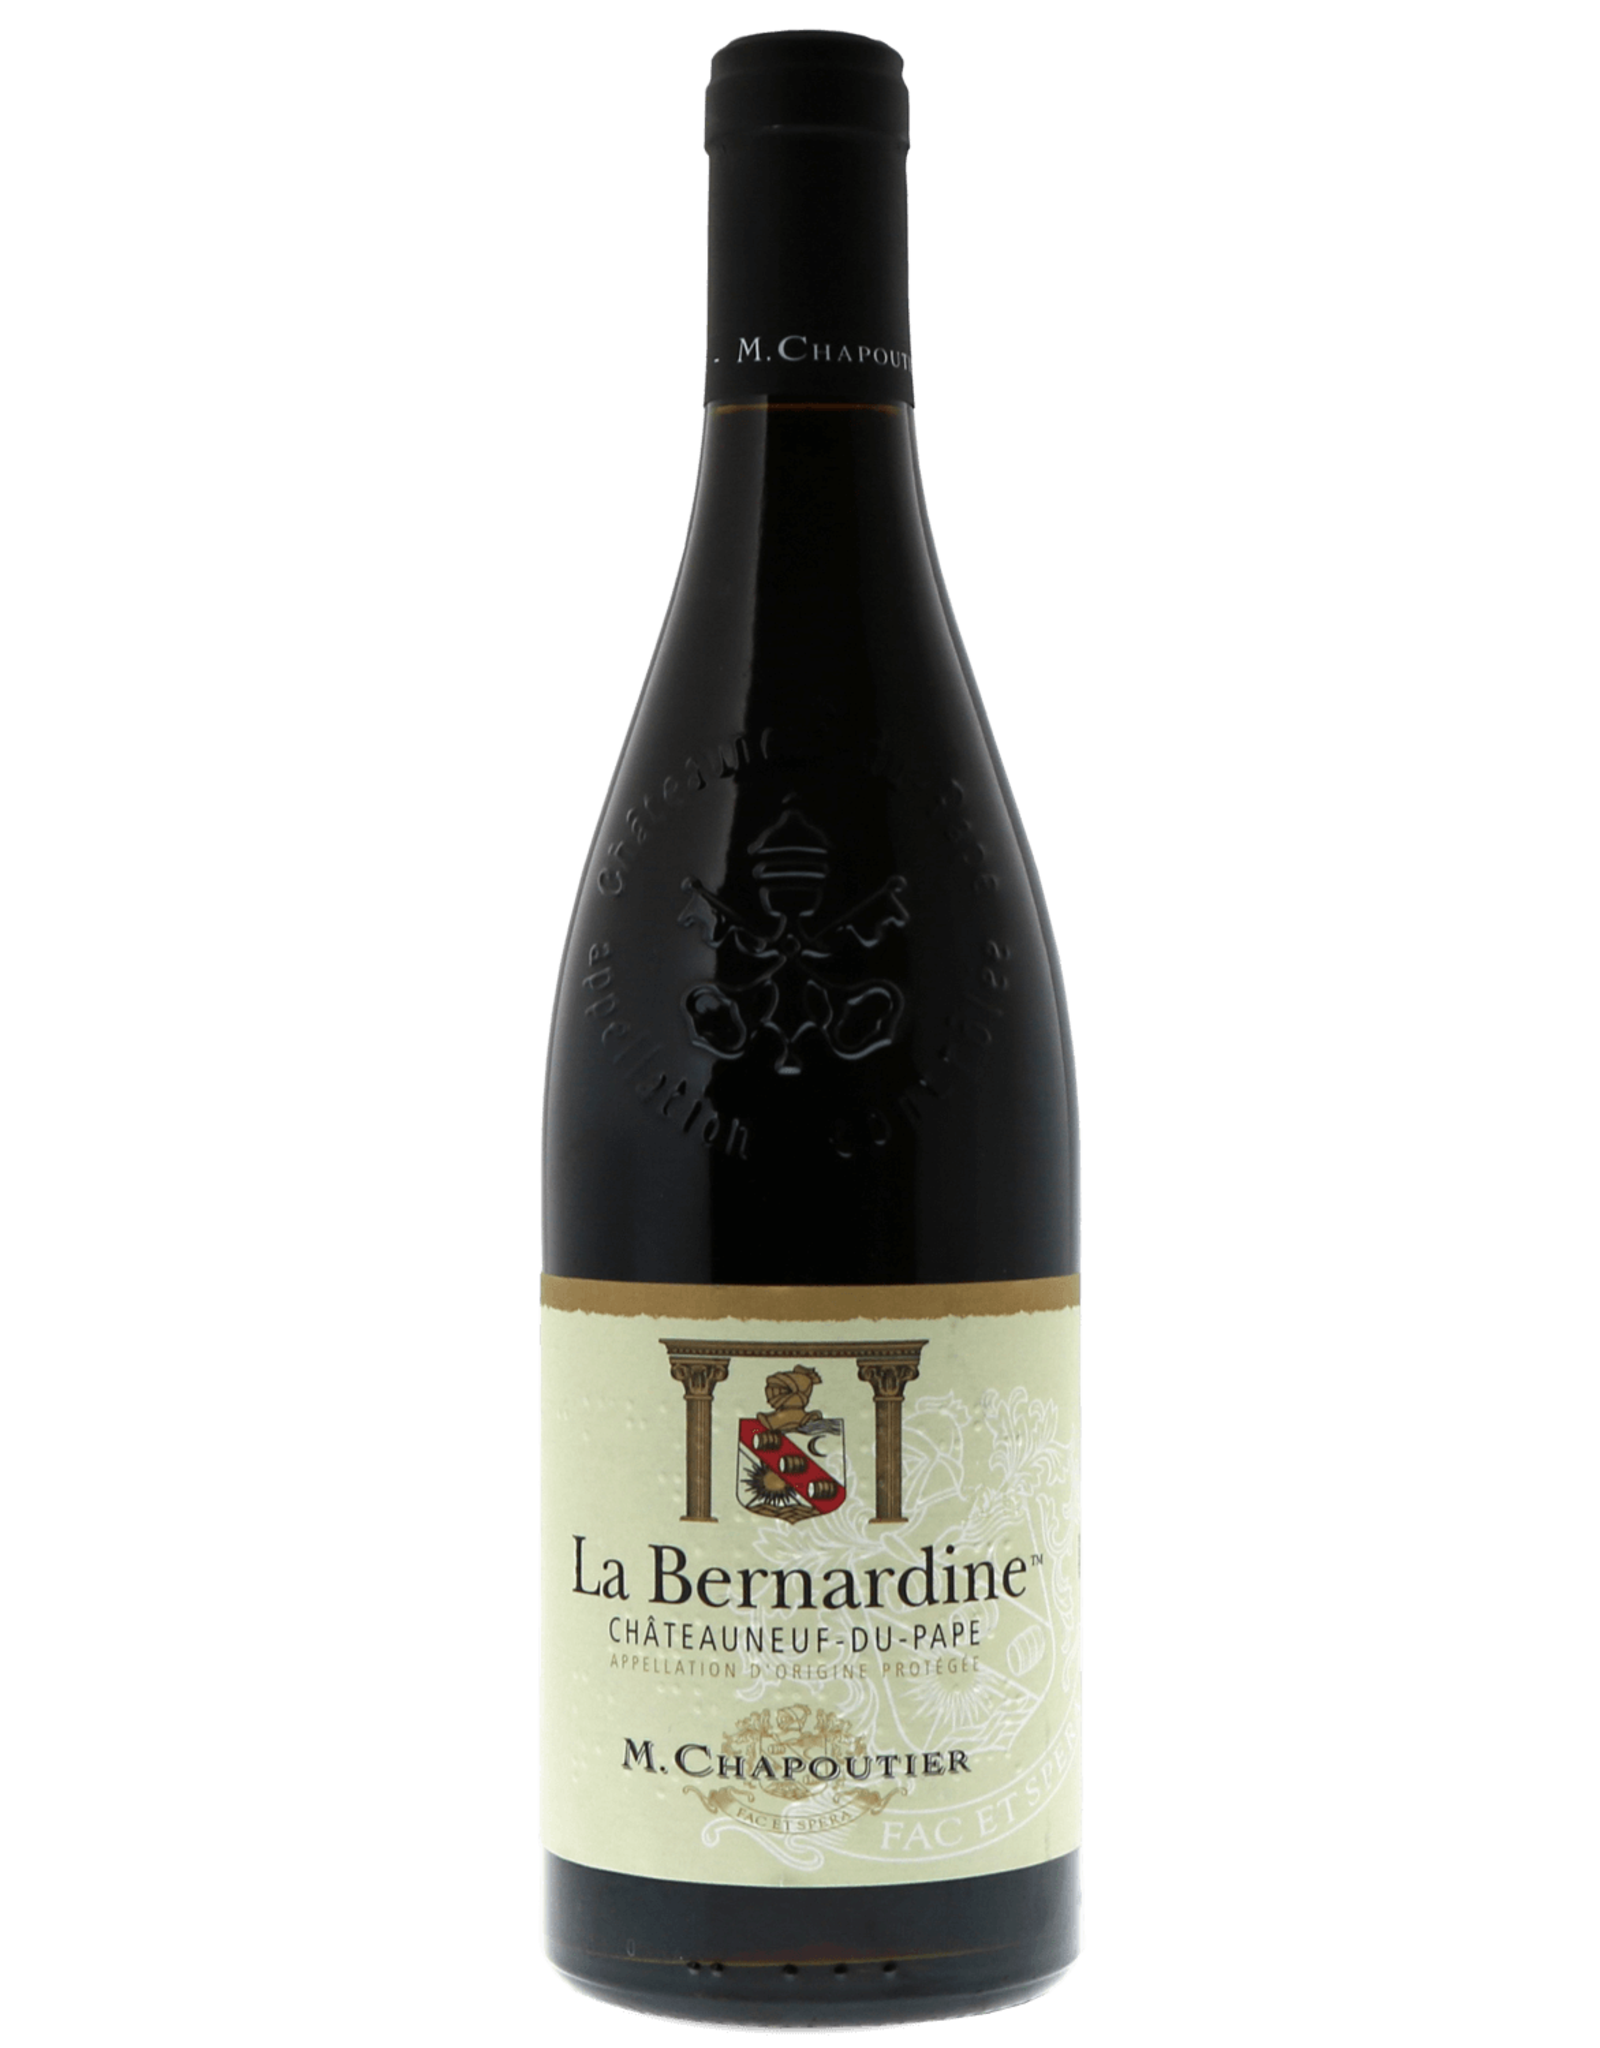 Red Wine 2016, M. Chapoutier La Bernadine Chateauneuf-du-Pape, Red Rhone Blend, Cotes du Rhone, Southern Rhone, France, 15% Alc, CT